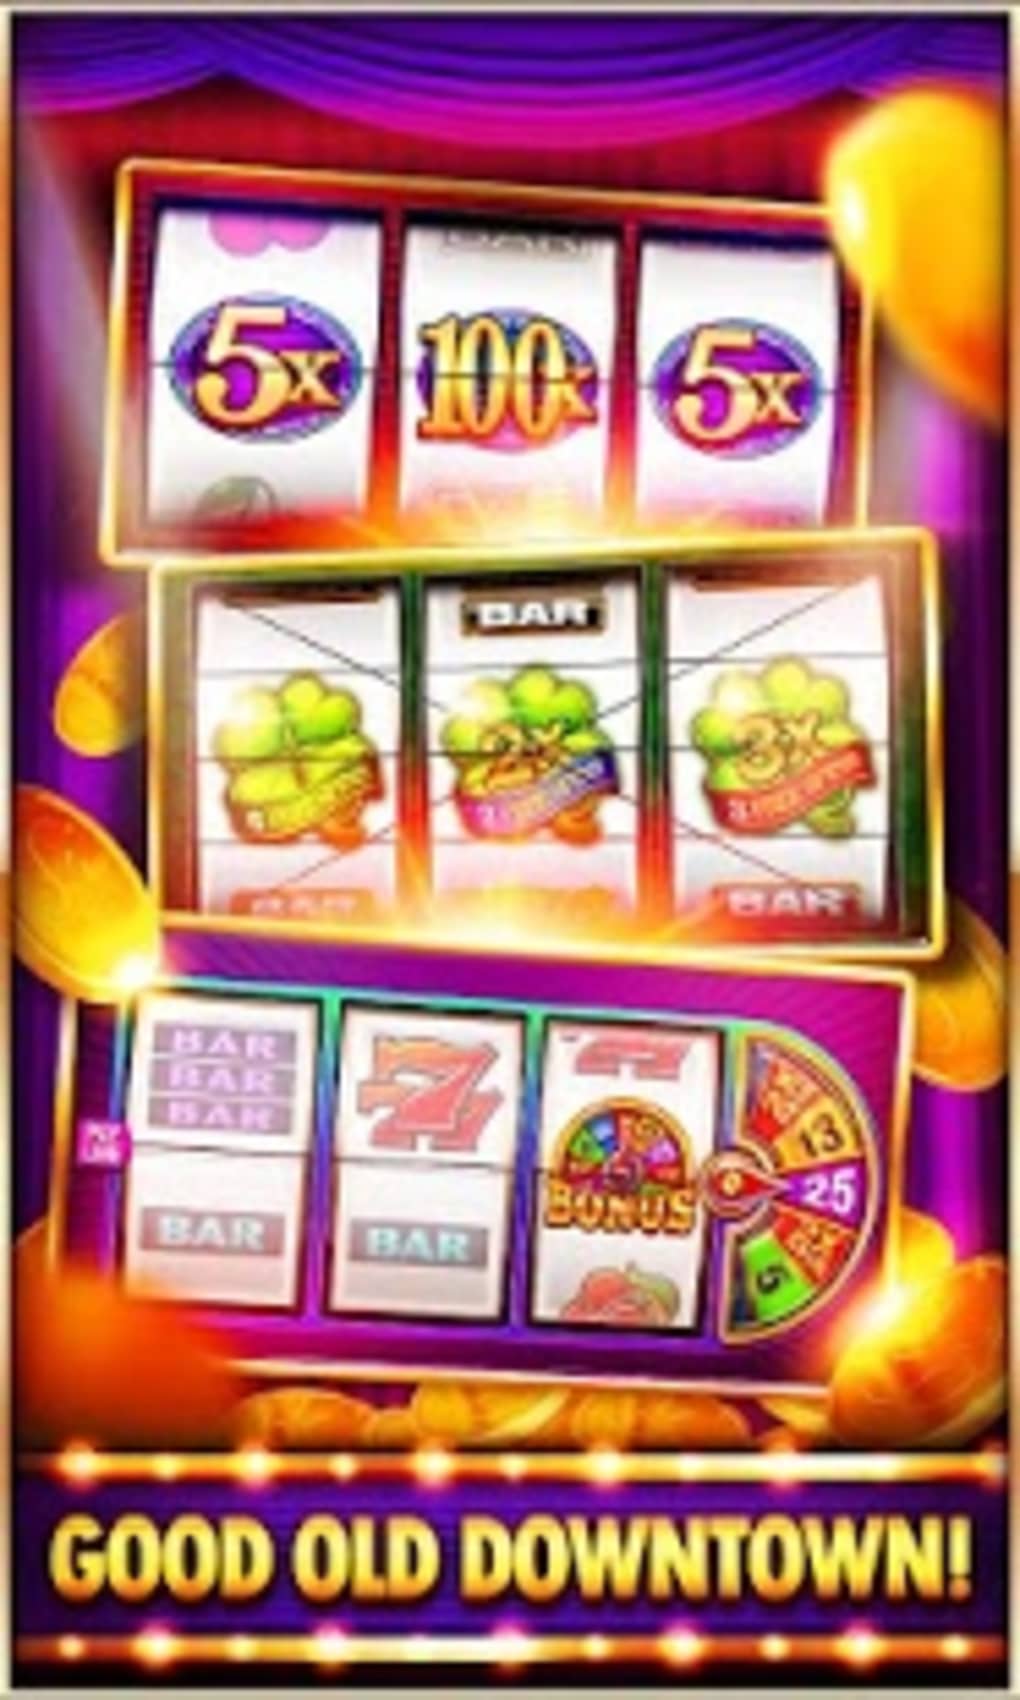 Slots plus casino sign up bonus